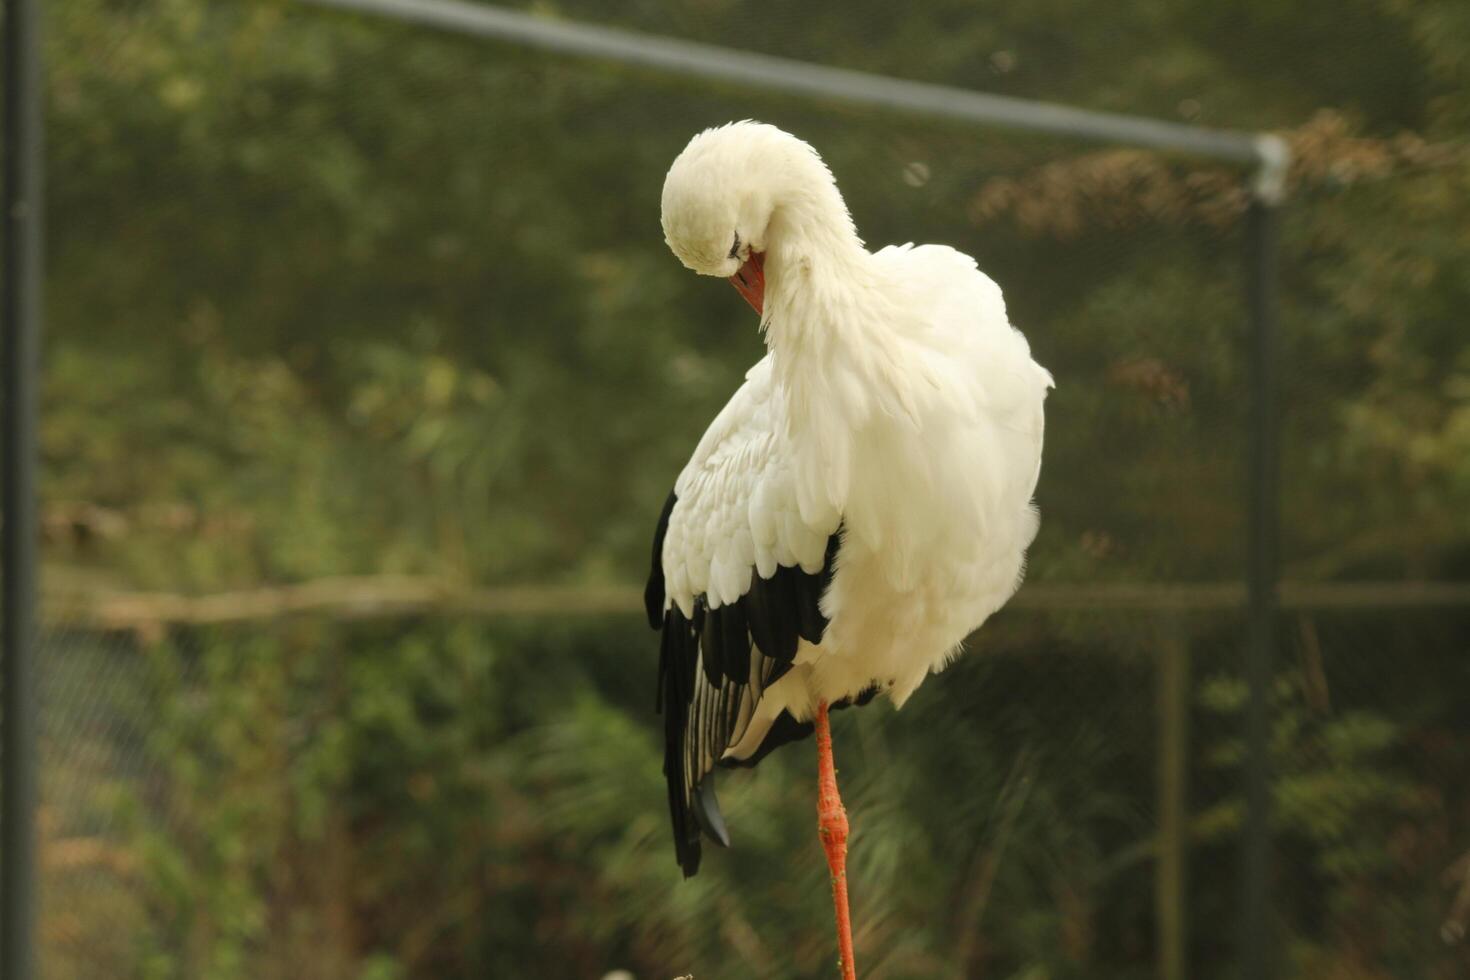 Weiß Storch, schön Weiß Vogel mit ein rot Schnabel foto